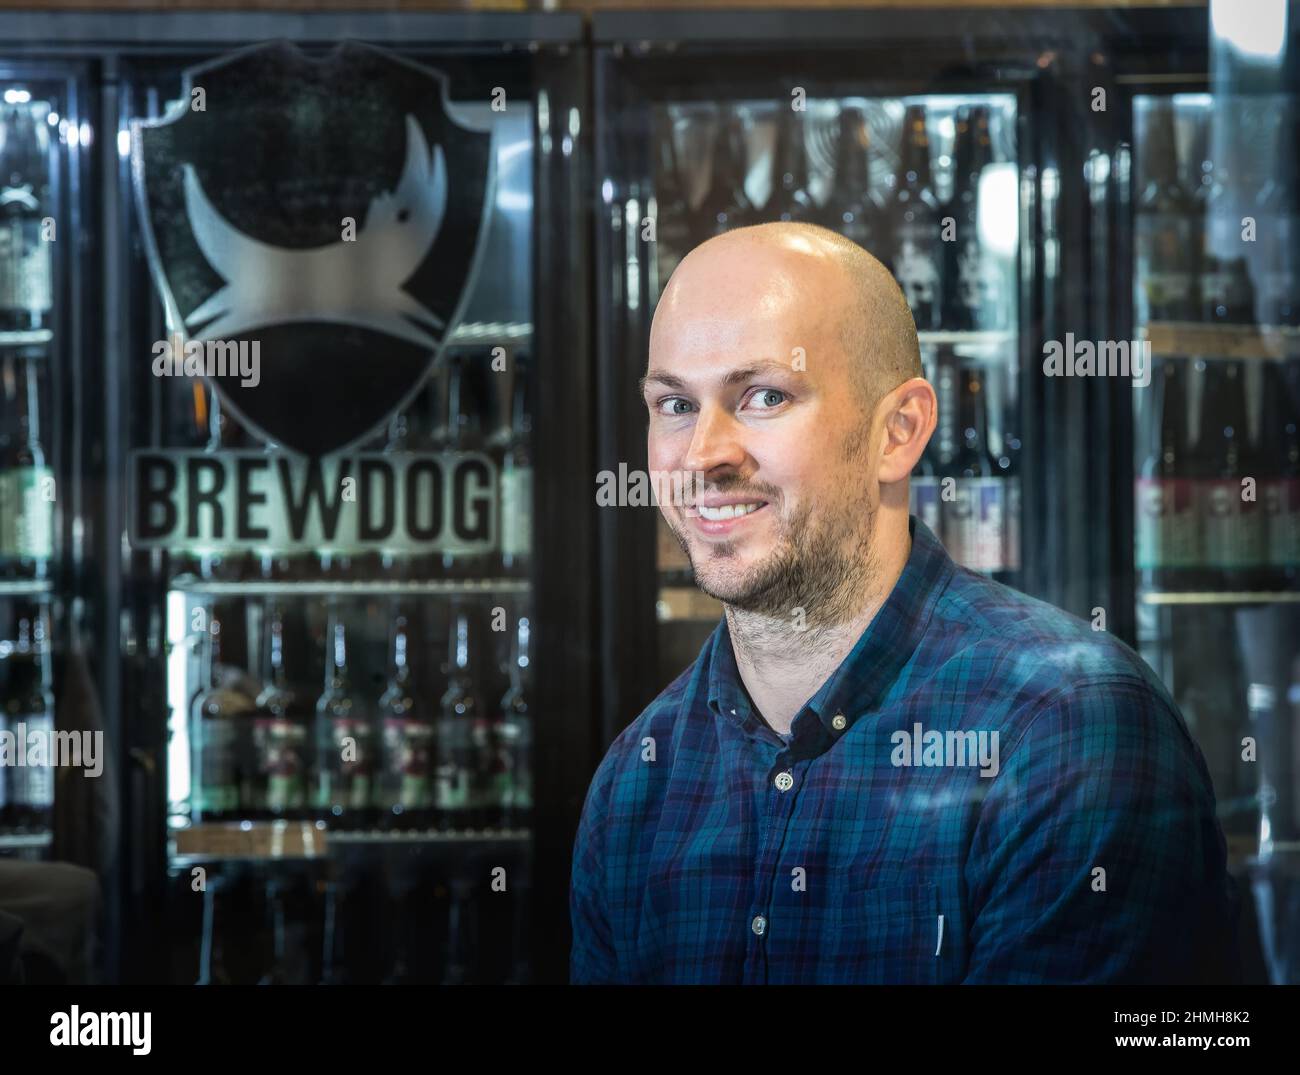 James Watt, CEO de la compañía cervecera de artesanía Brewdog, fotografiado en su compañía cervecera y oficina central en Ellon, Escocia Foto de stock